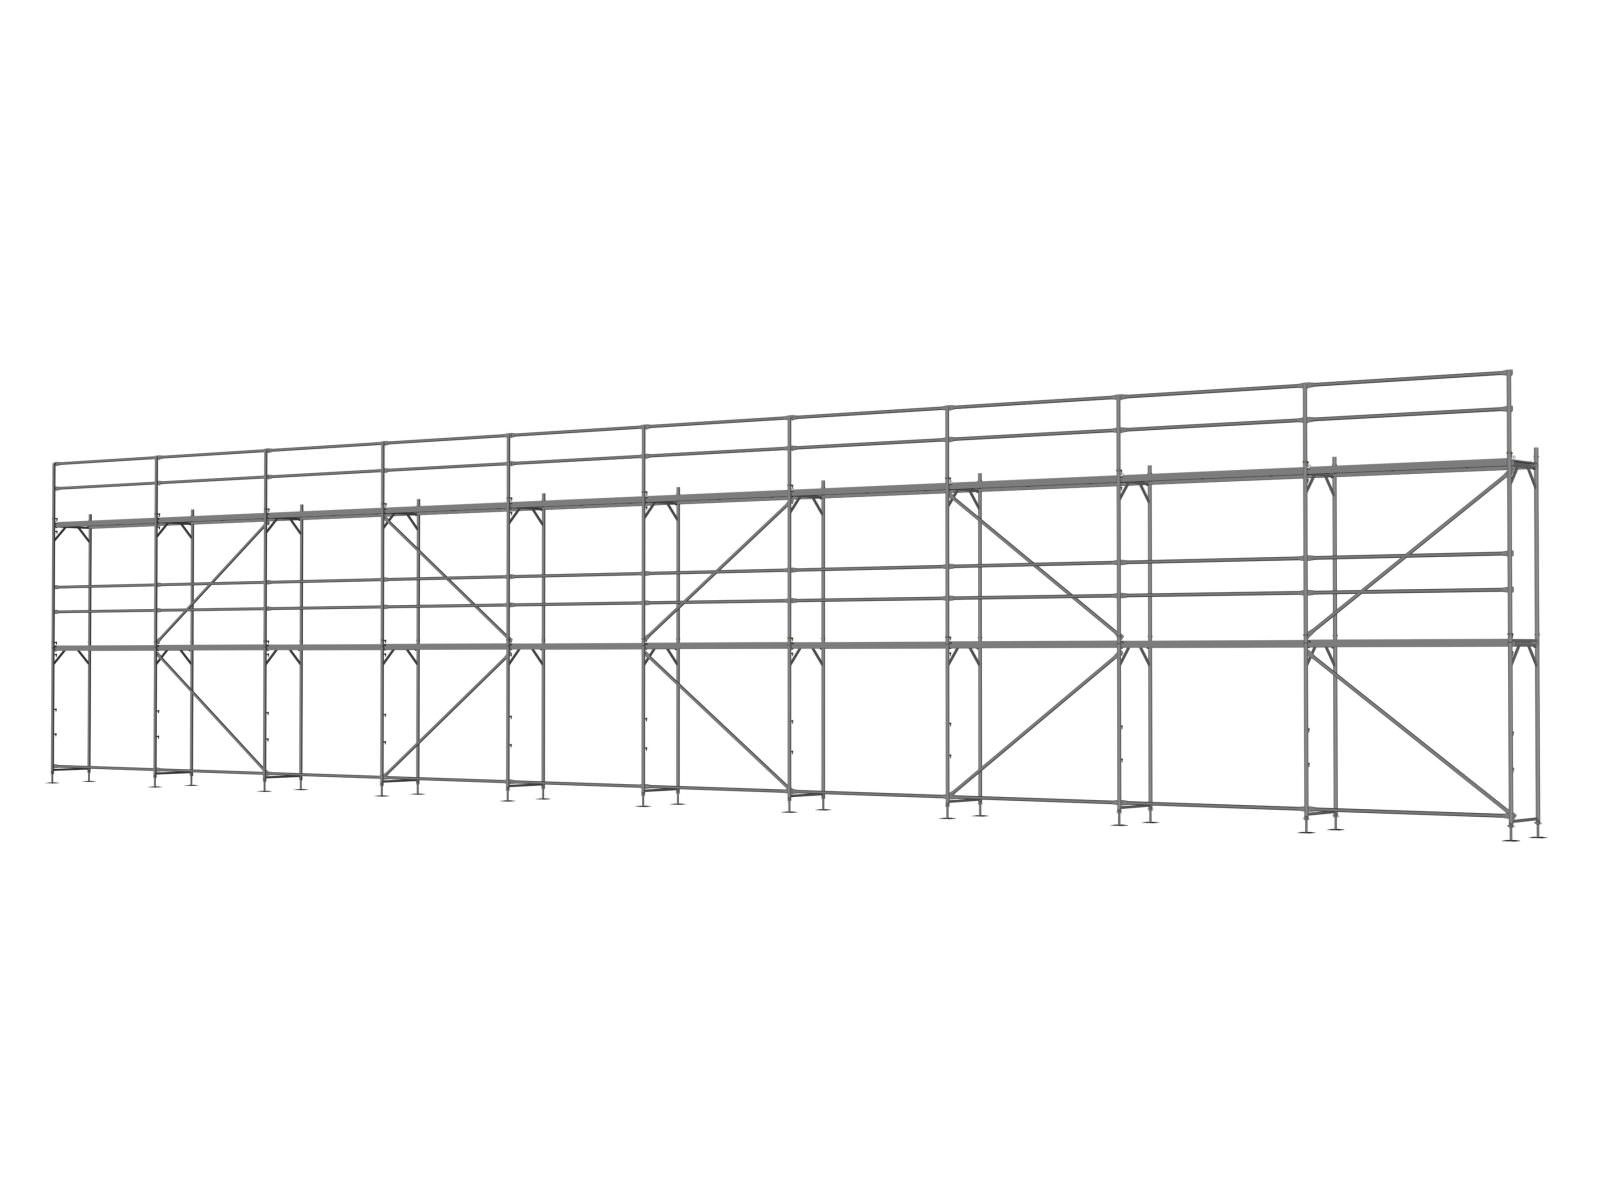 Stahl Traufseitengerüst 150 qm - 2,5 m Felder - 25 m lang - 6 m Arbeitshöhe - Basis-Gerüst